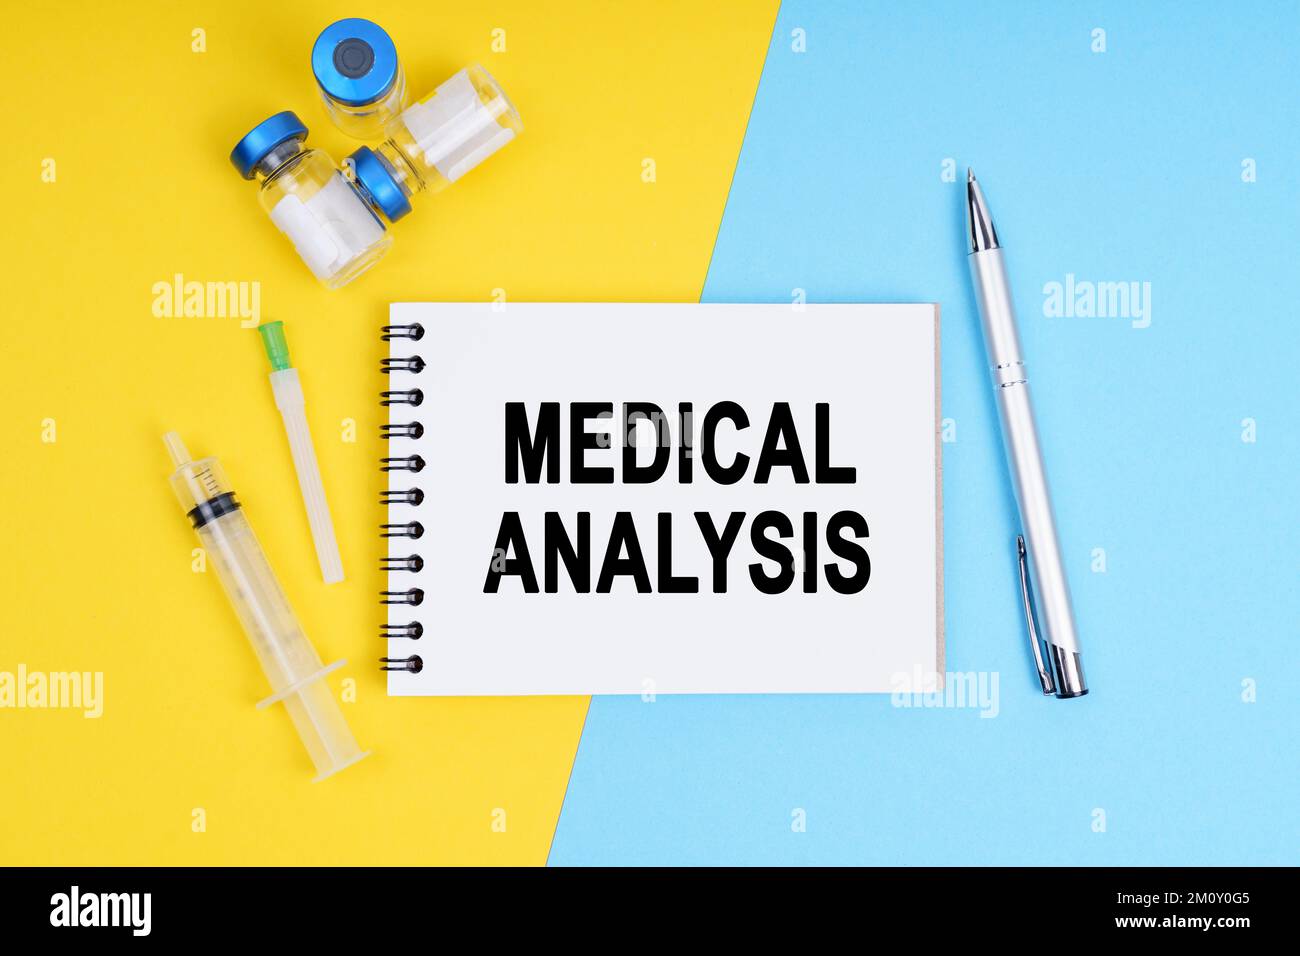 Medizin und Gesundheitskonzept. Eine Spritze, Ampullen und ein Notizbuch mit der Aufschrift - MEDIZINISCHE ANALYSE Stockfoto